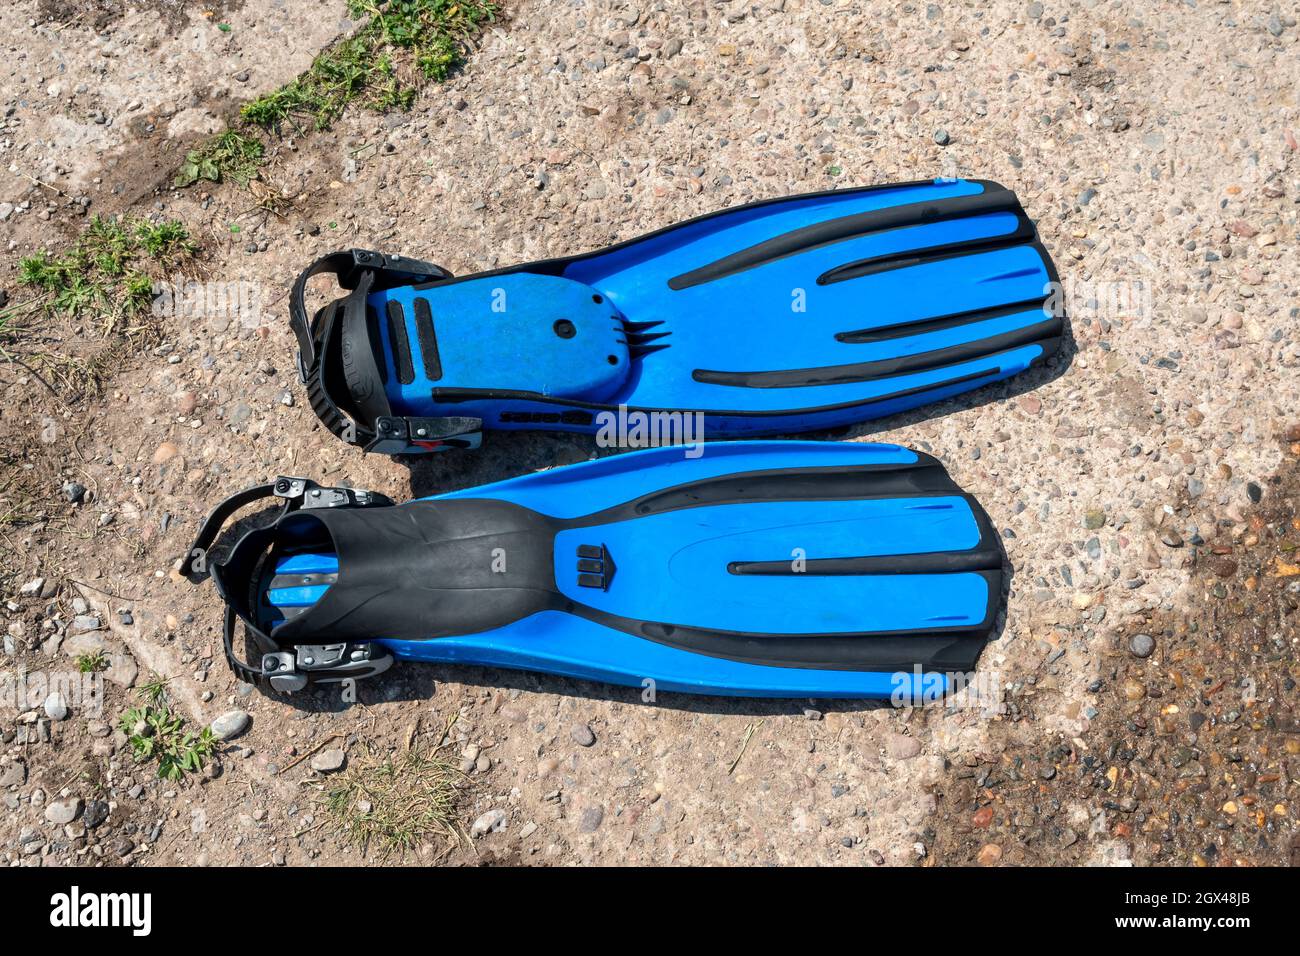 Une paire de nageoires bleues de plongée se trouve sur une dalle de béton lors d'une journée ensoleillée d'été. Banque D'Images